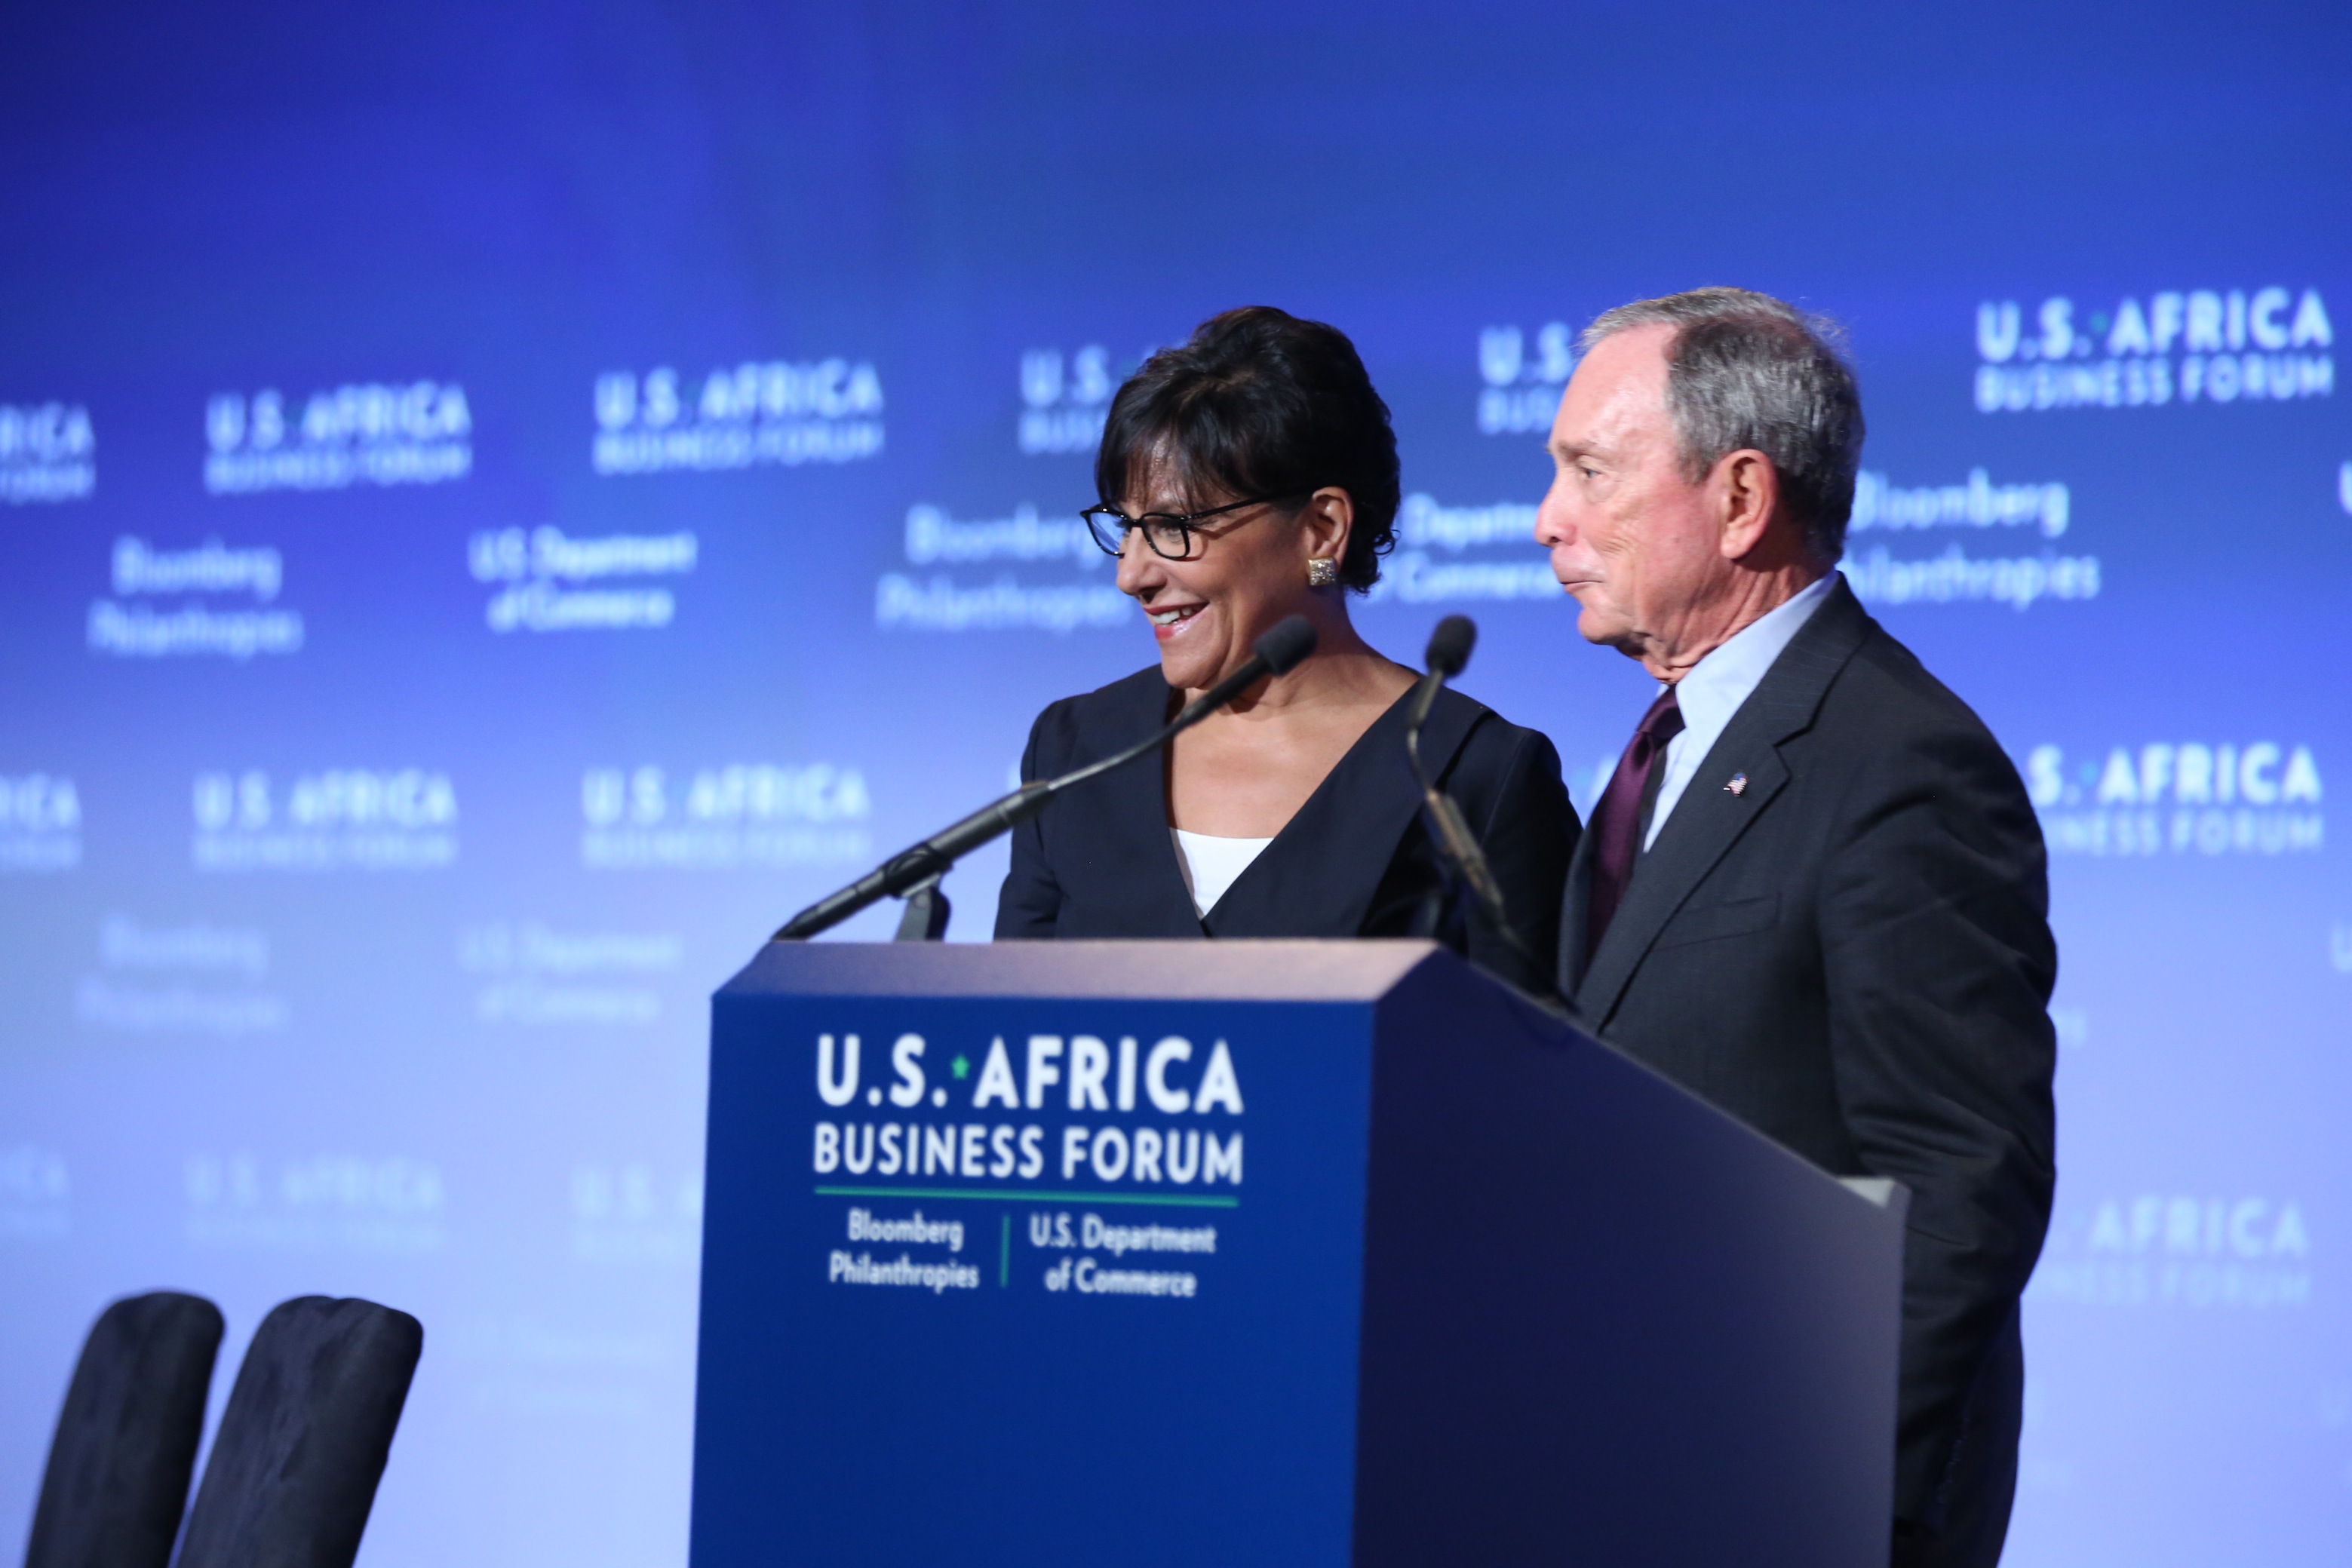 La secrétaire d’Etat au commerce américaine, Penny Pritzker et Michael Bloomberg, célèbre patron de presse et ancien maire de la ville de New-York ©DR